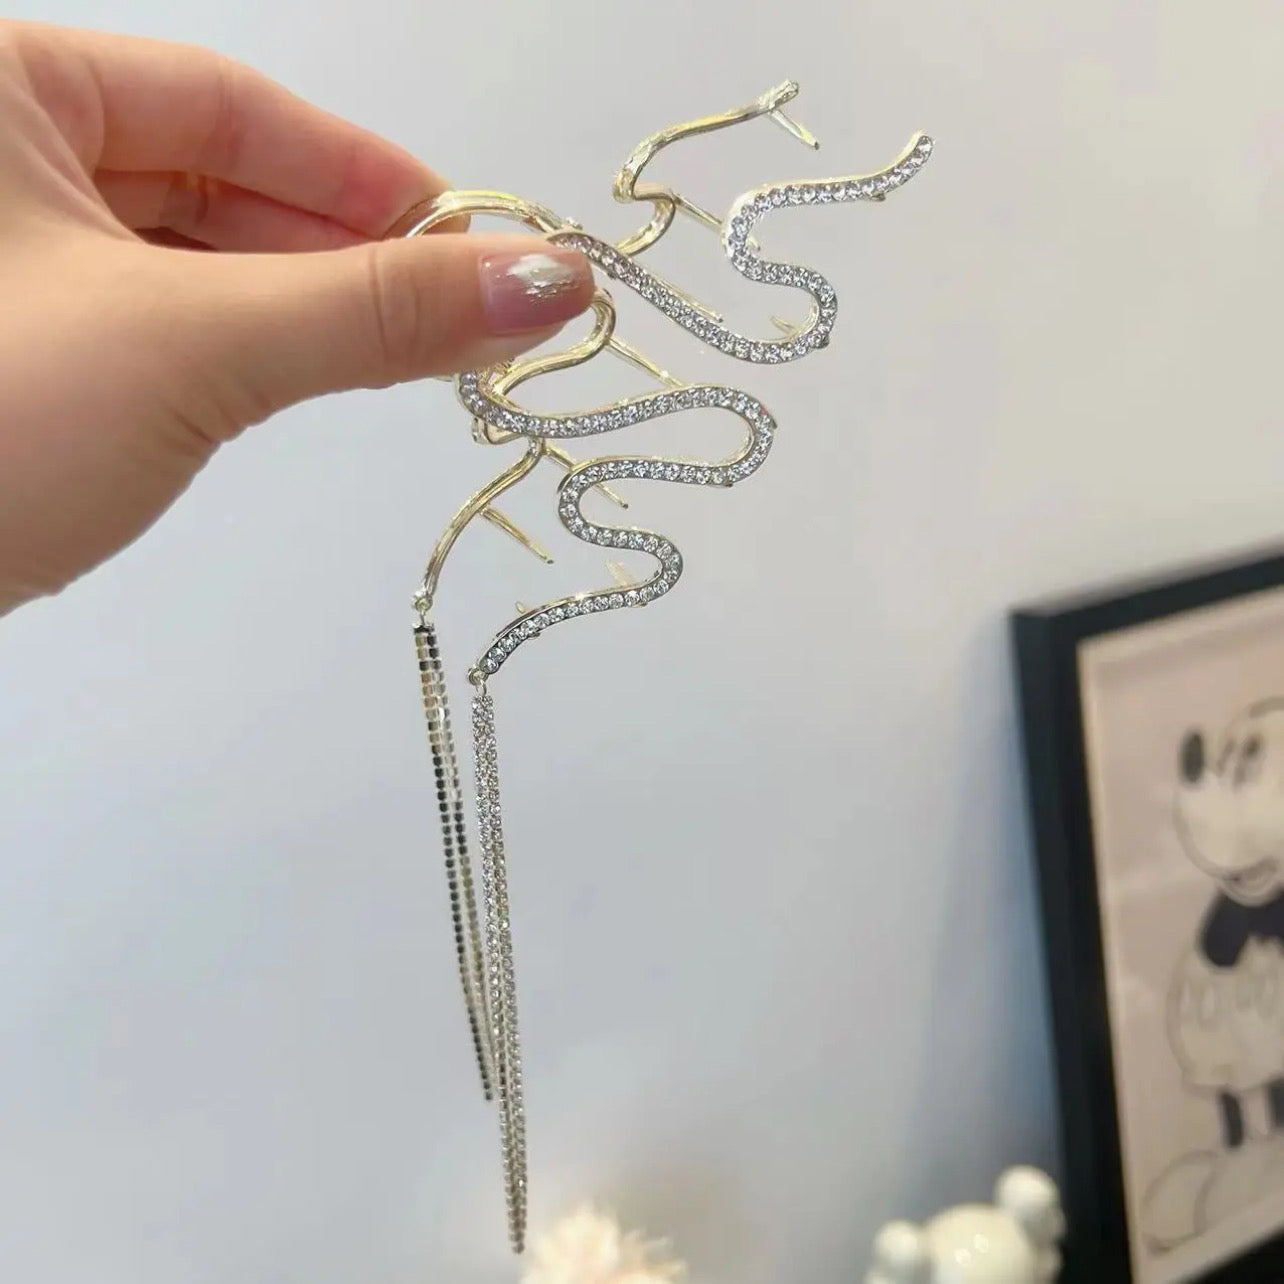 Cool feeling snake hair clip